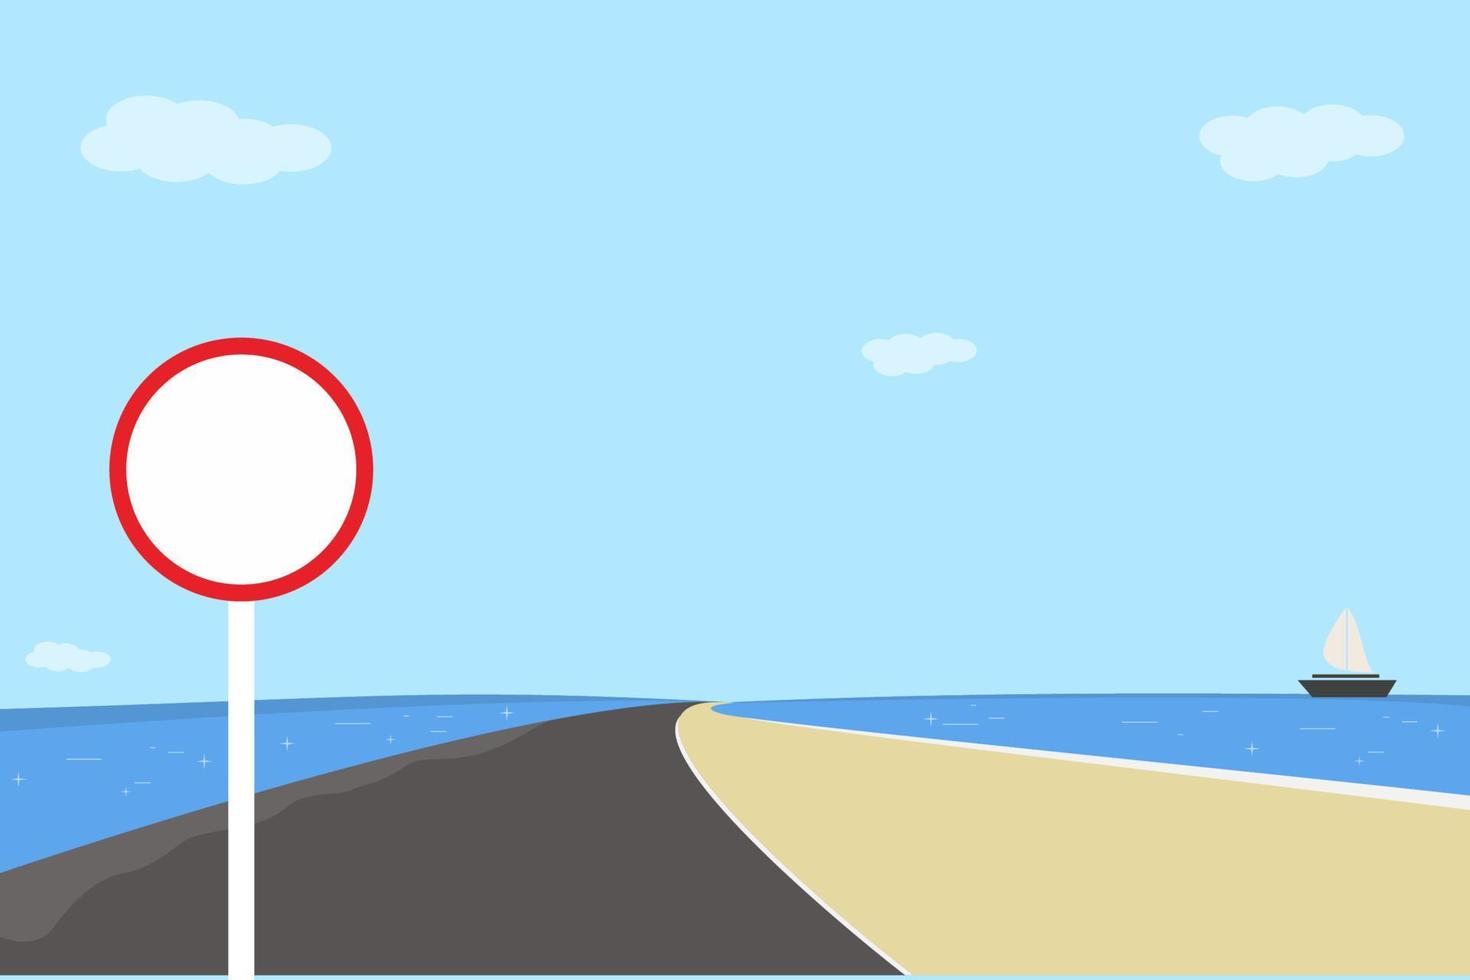 panneau de signalisation vierge sur fond de ciel bleu, illustration vectorielle vecteur